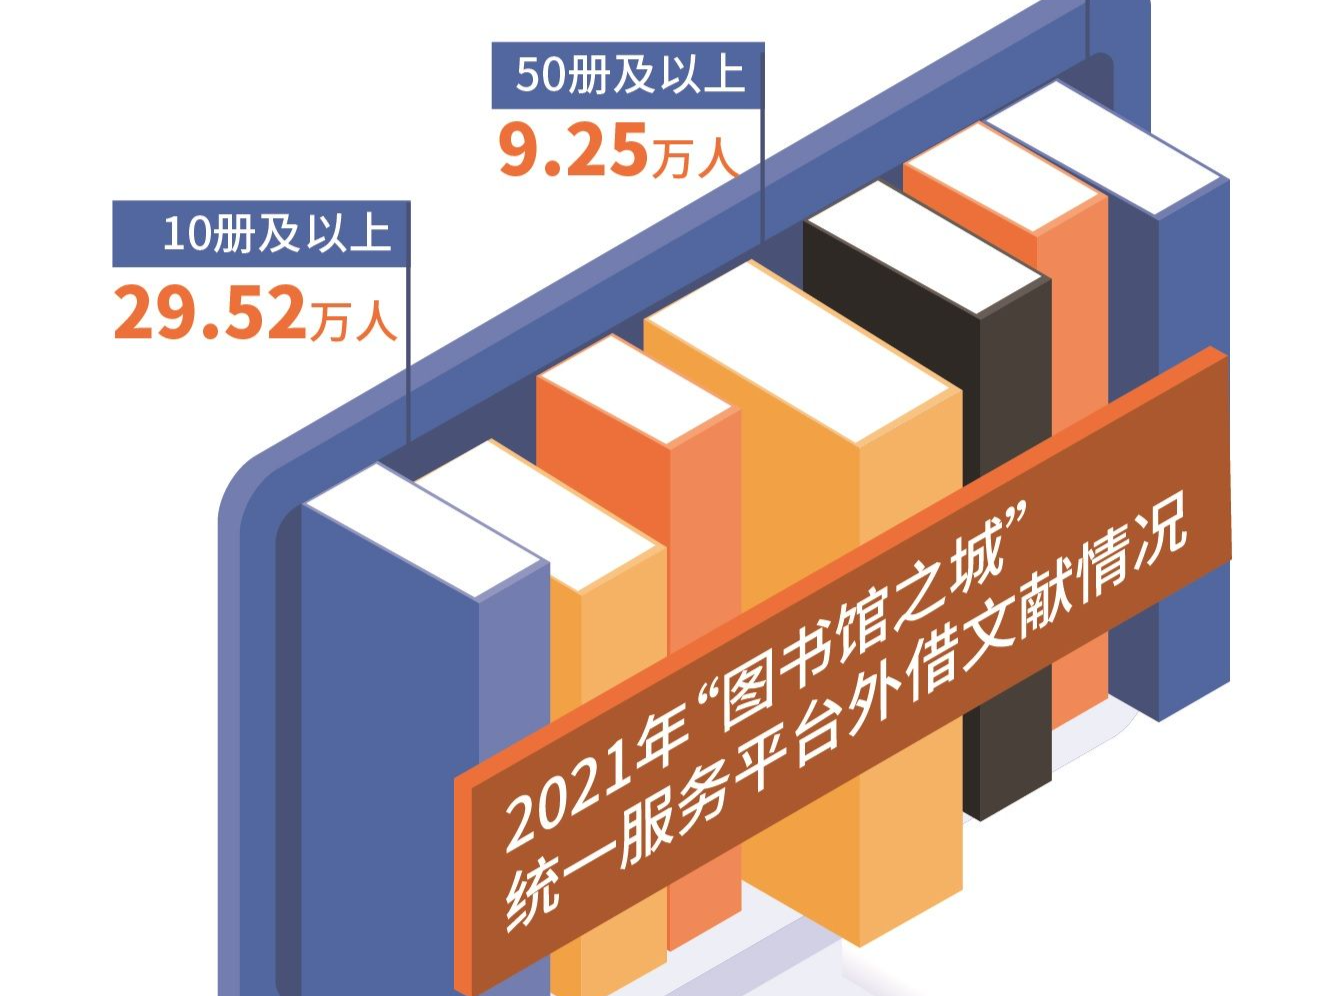 “爱阅之人”：去年深圳人日均阅读超过1.5小时 